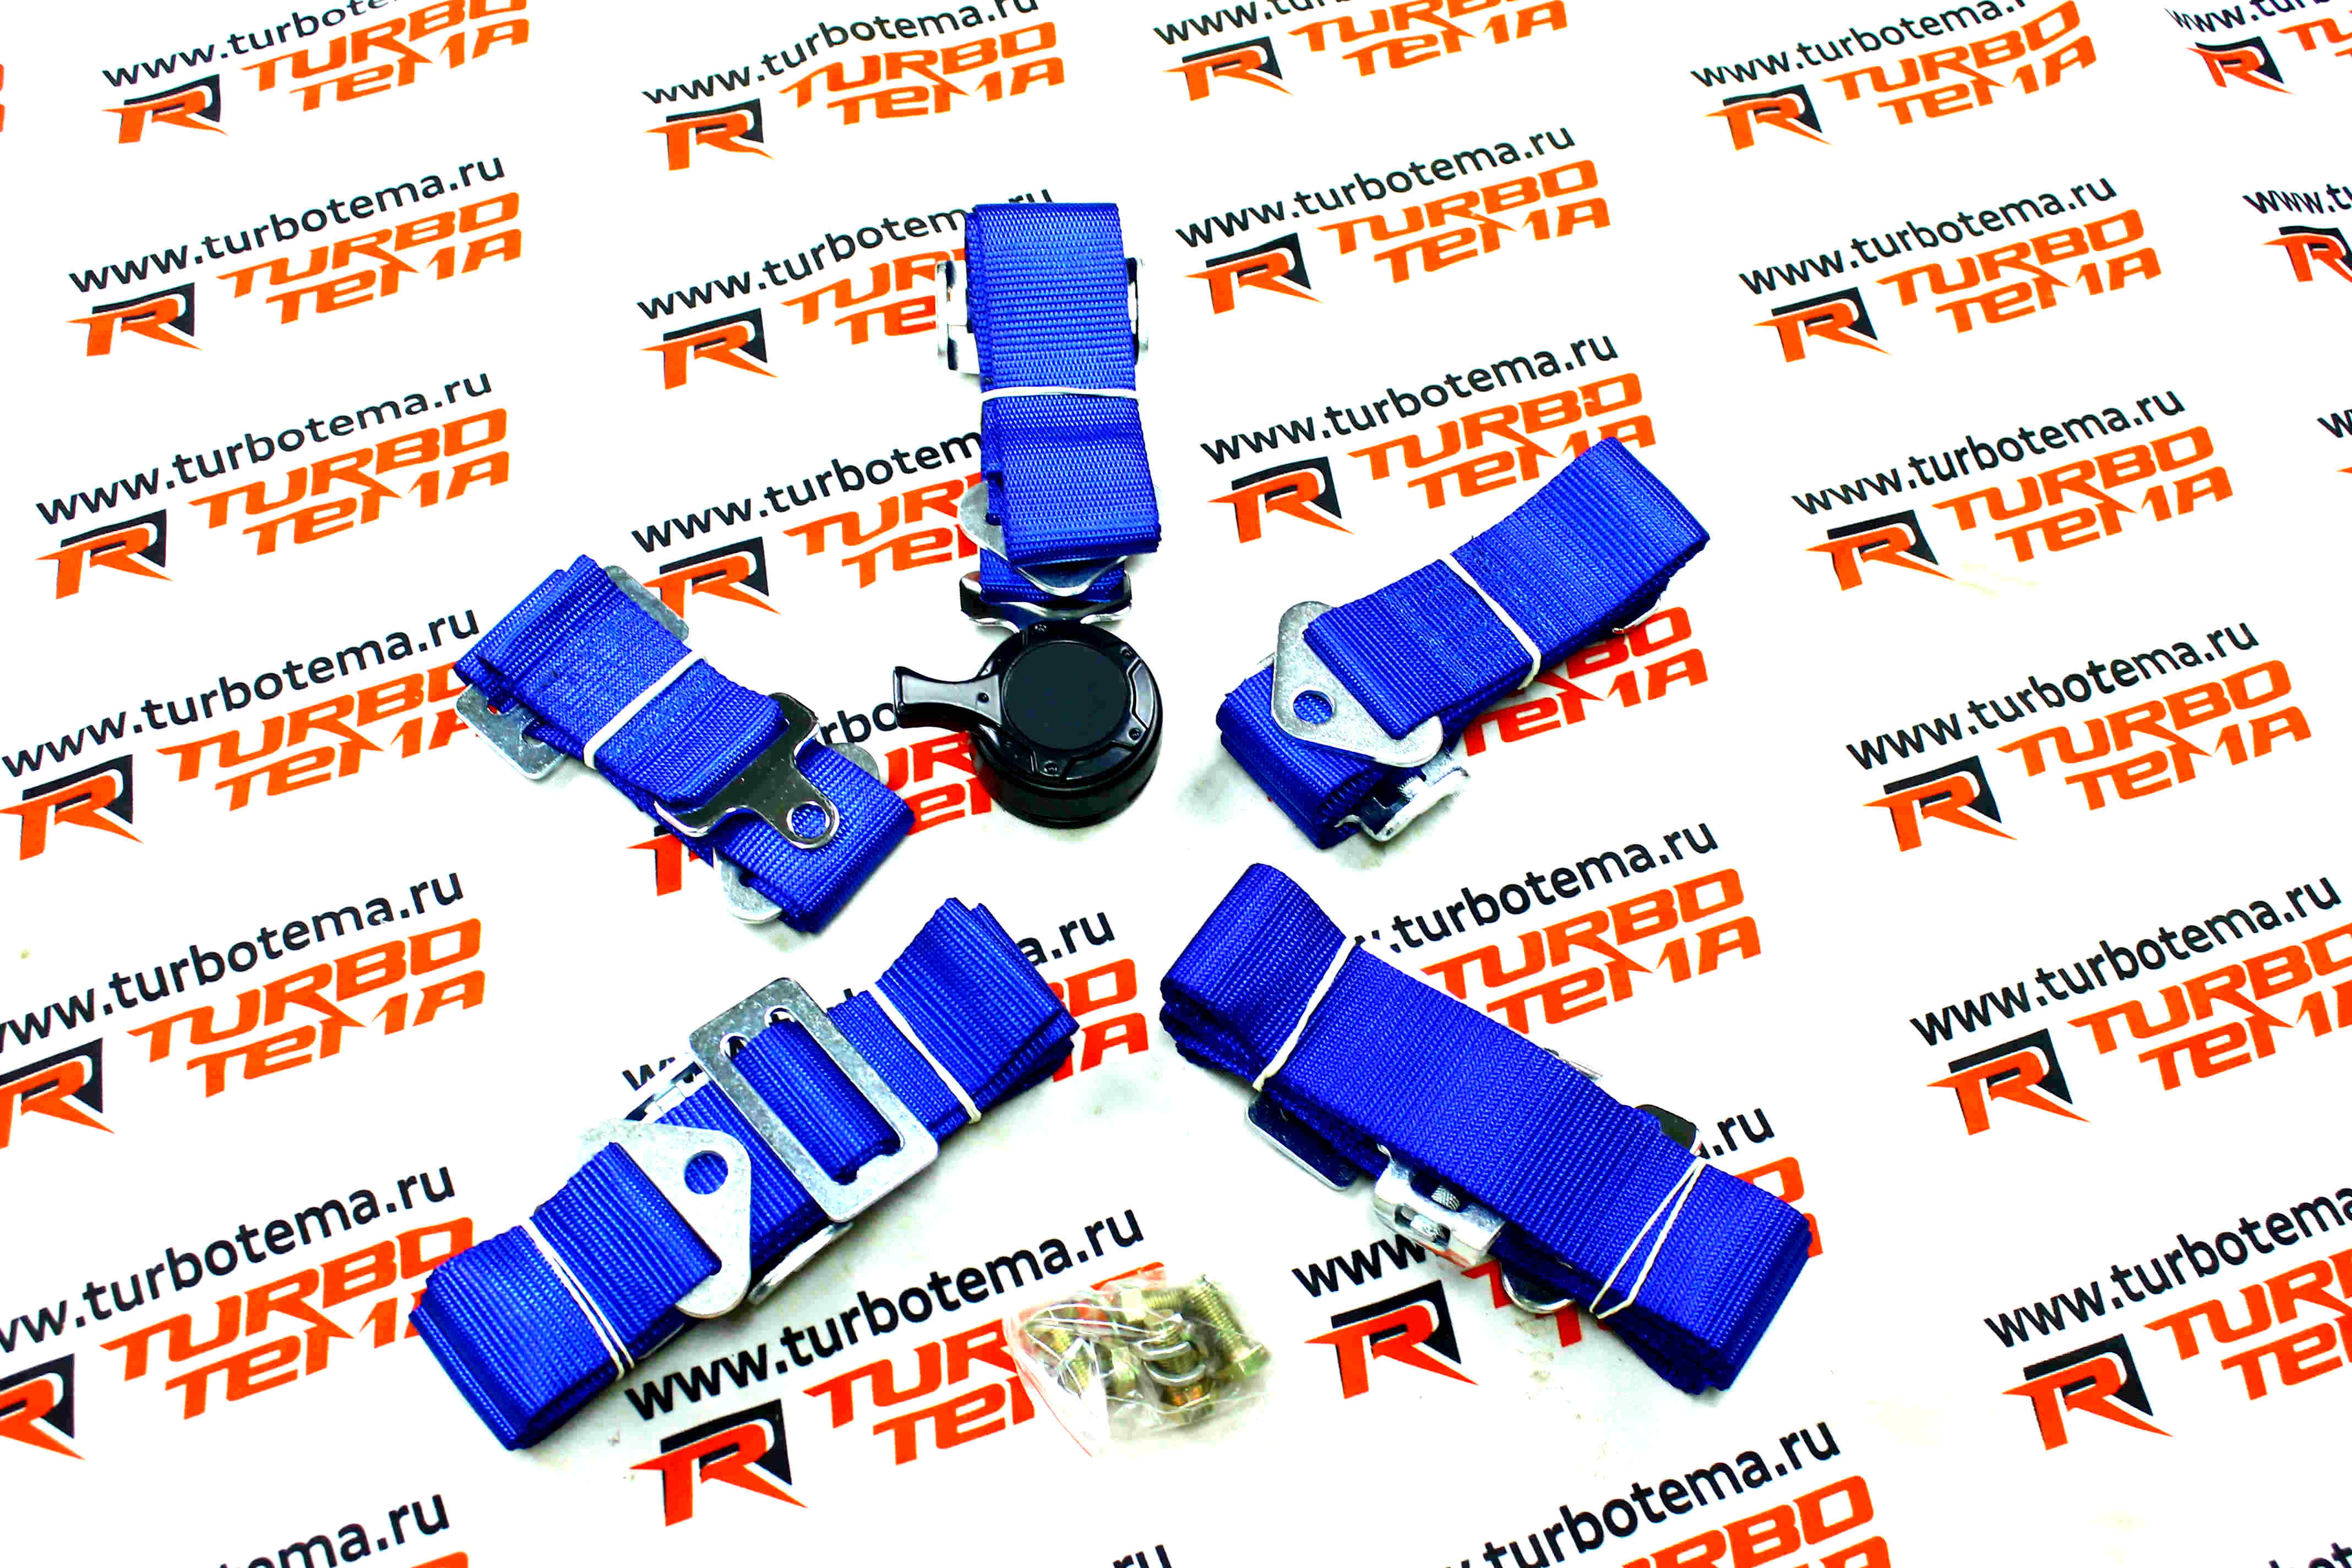 Ремни безопасности "TURBOTEMA" 5-ти точечные, 2" ширина, быстросъемные (синие) JBR4001-5. Фото �2